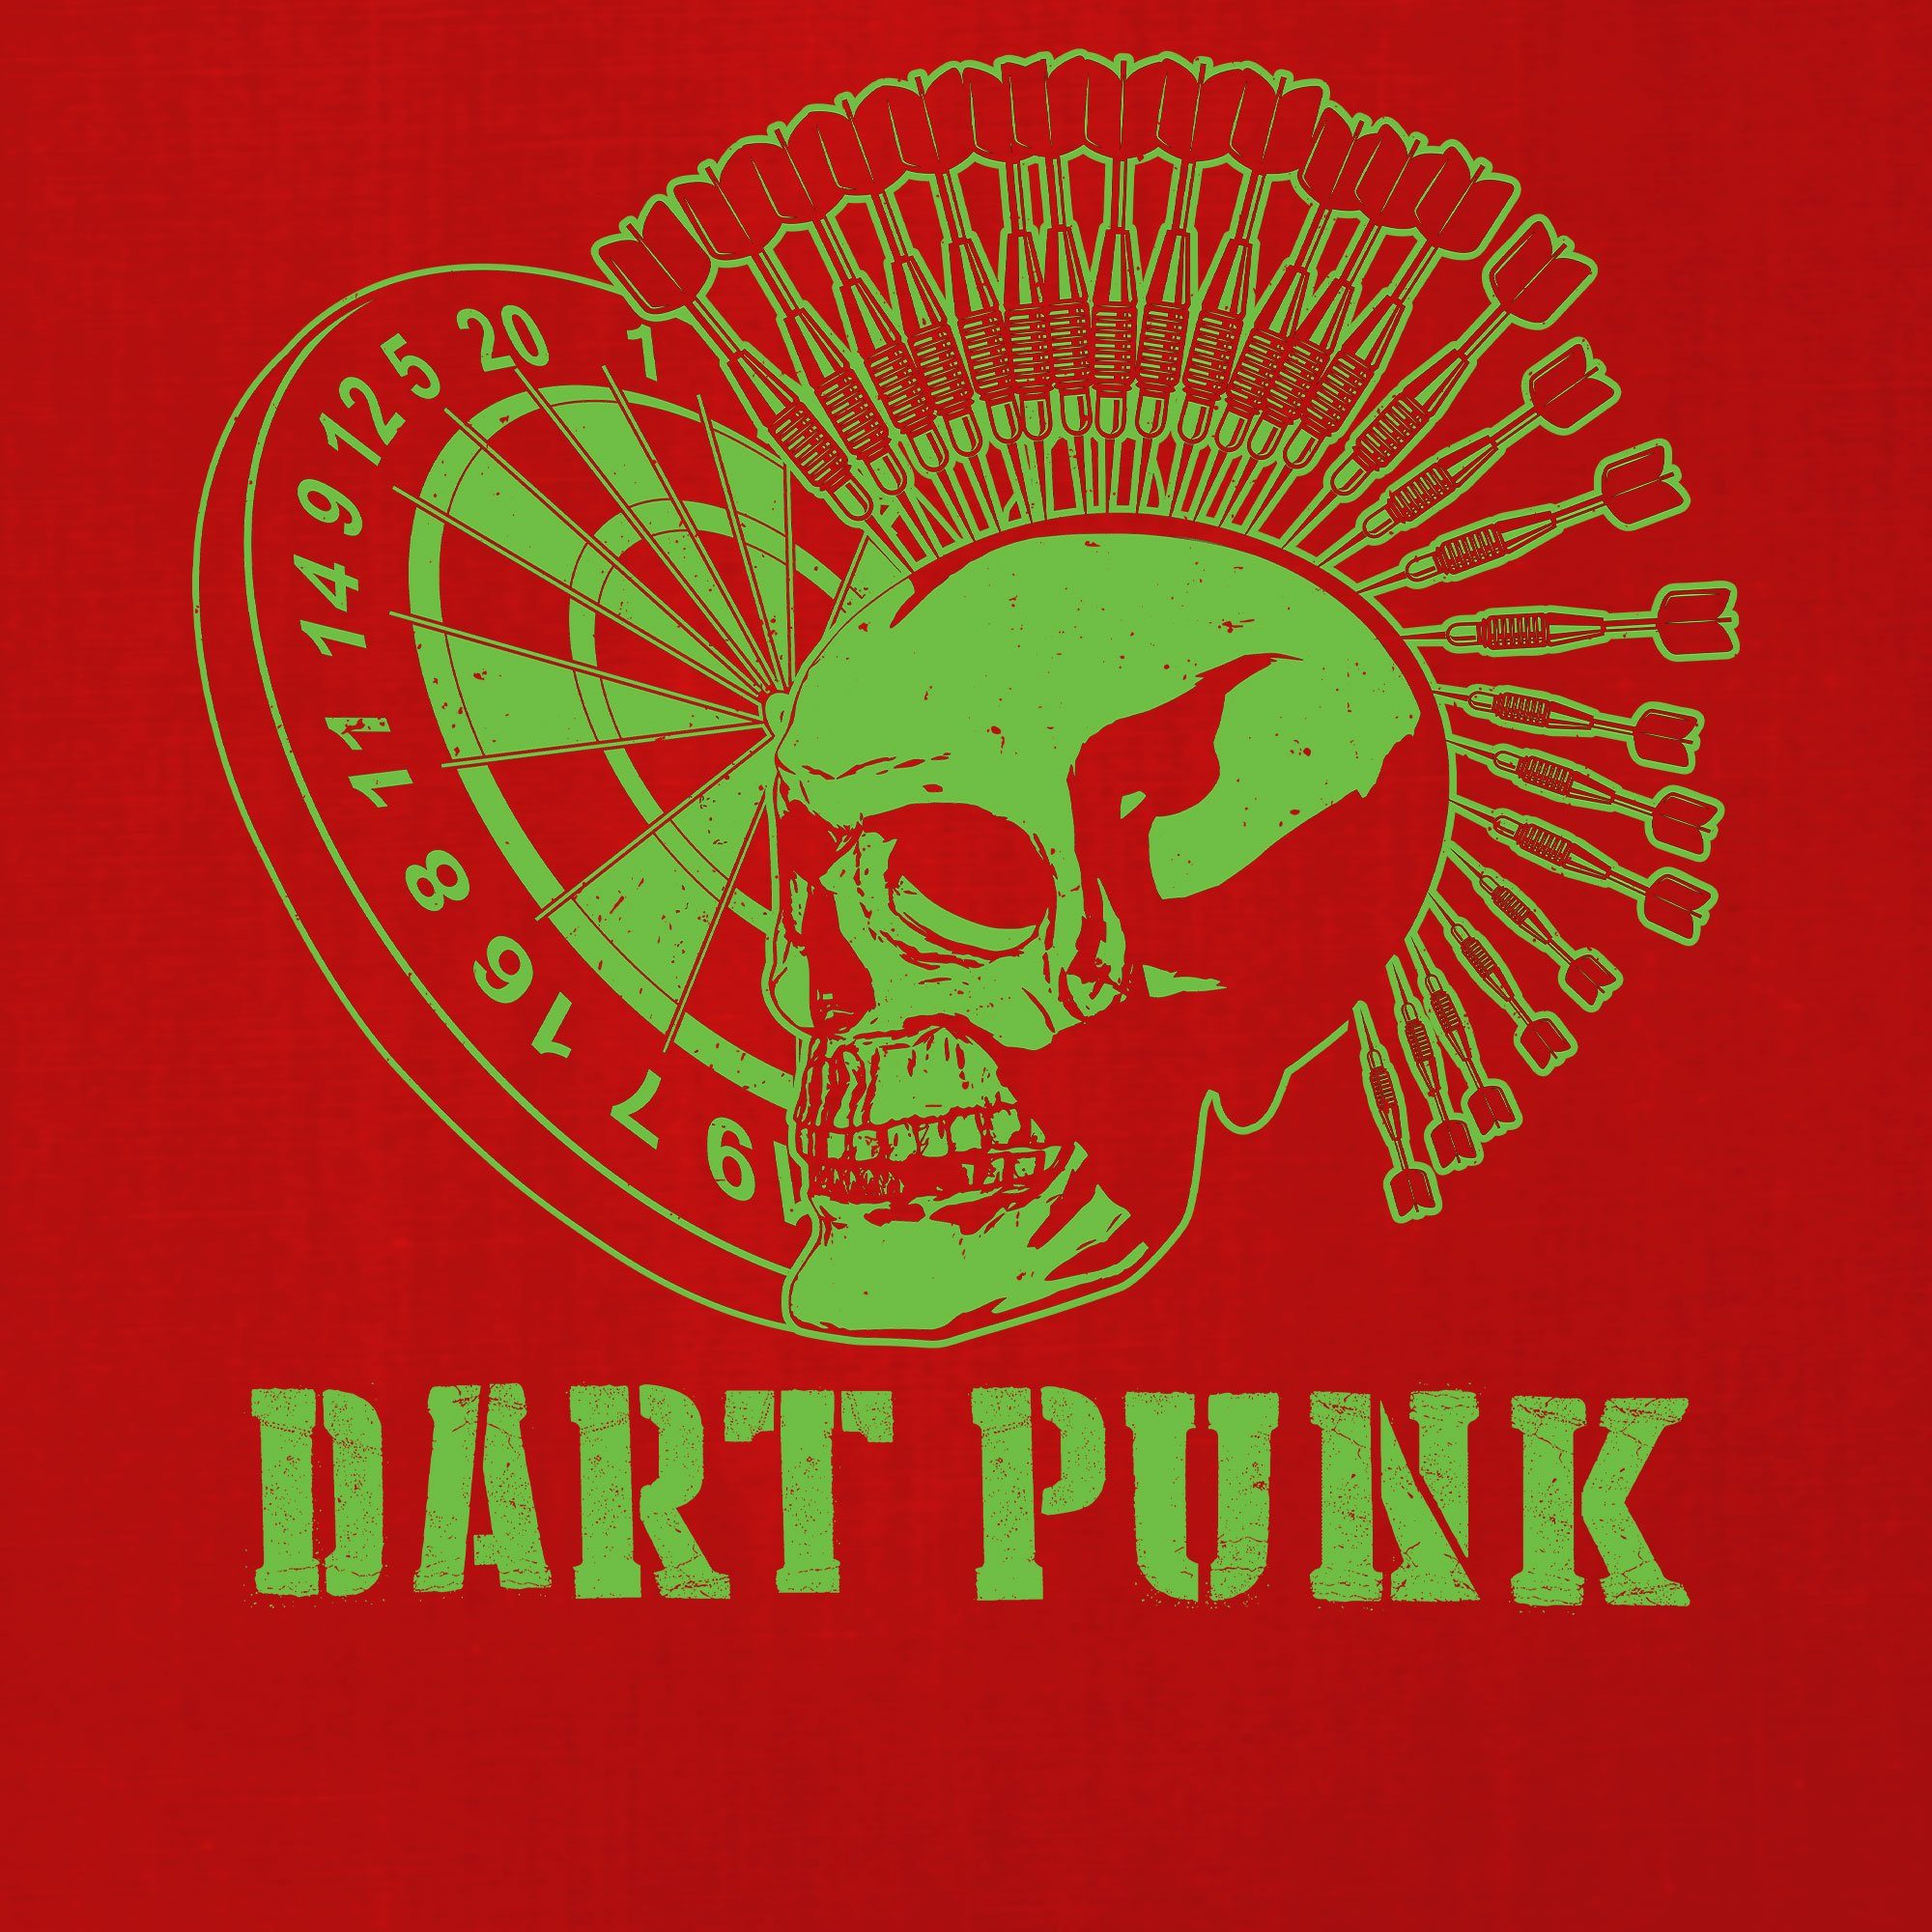 (1-tlg) T-Shirt Rot Dartspieler - Dart Dartpfeil Kurzarmshirt Quattro Dart Punk Herren Dartscheibe Formatee